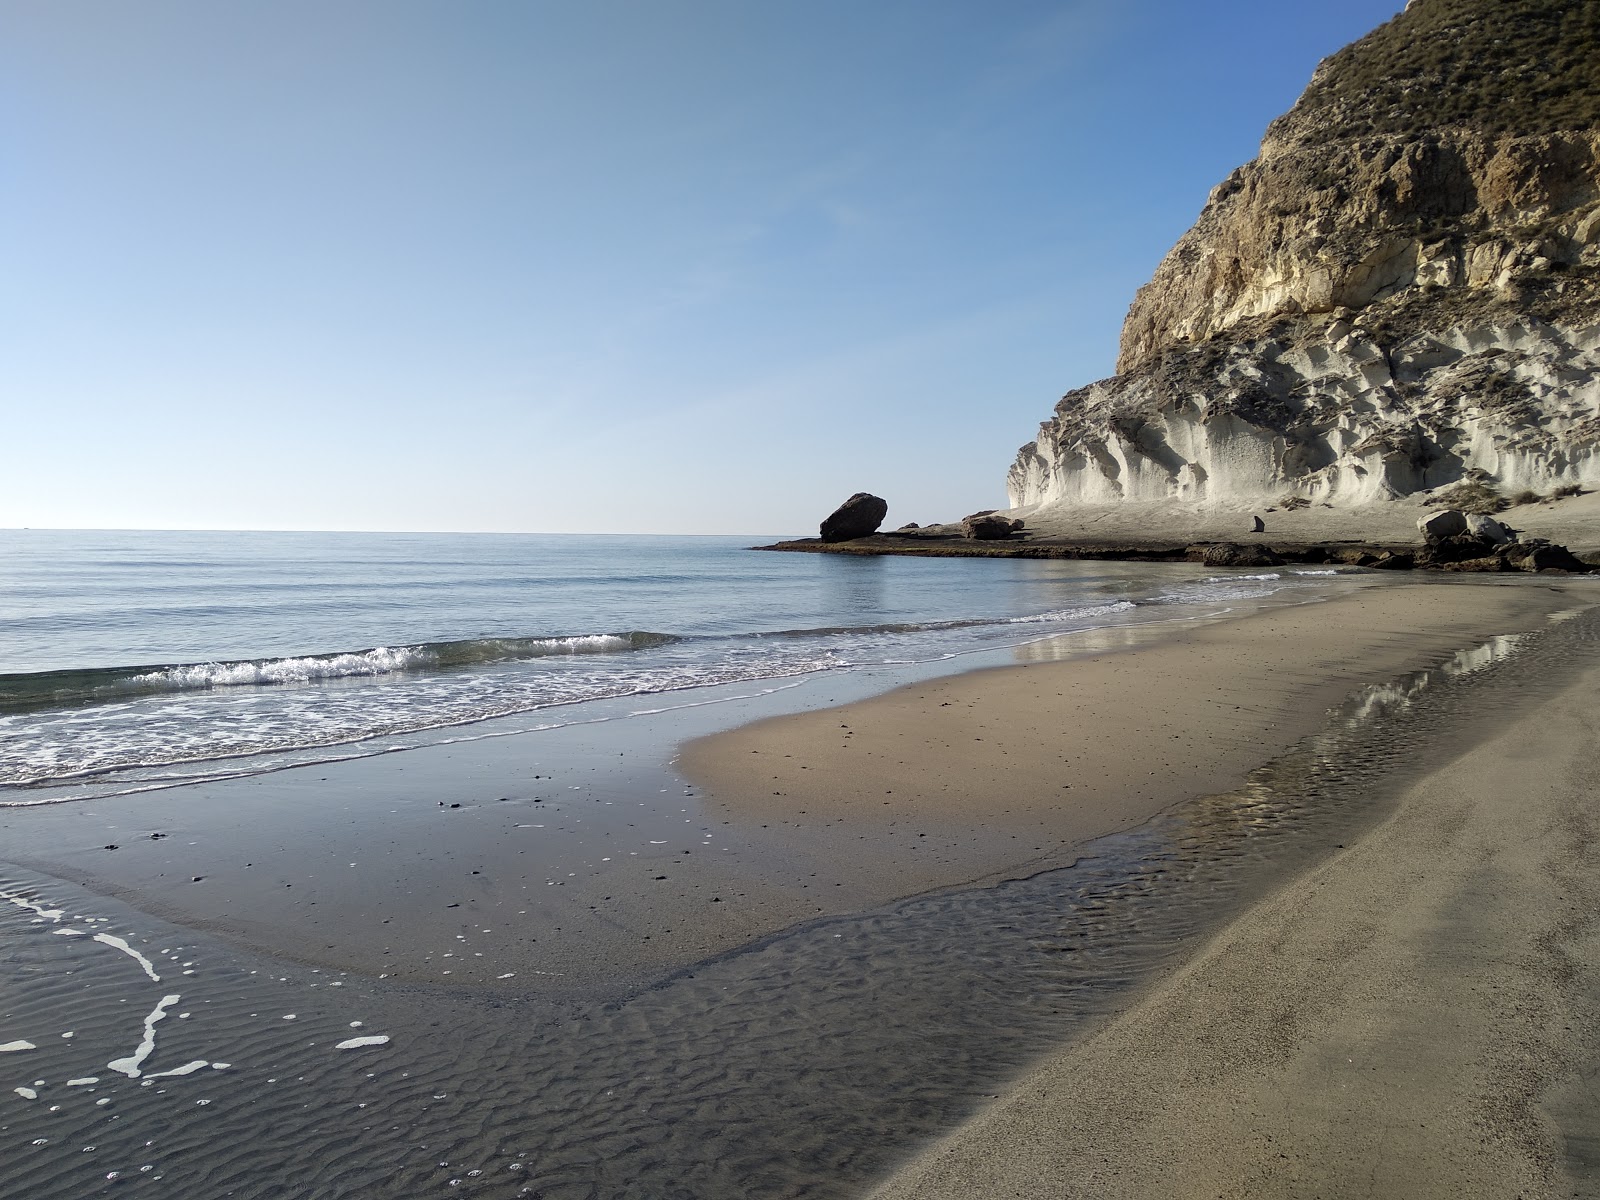 Cala de Enmedio'in fotoğrafı parlak kum yüzey ile